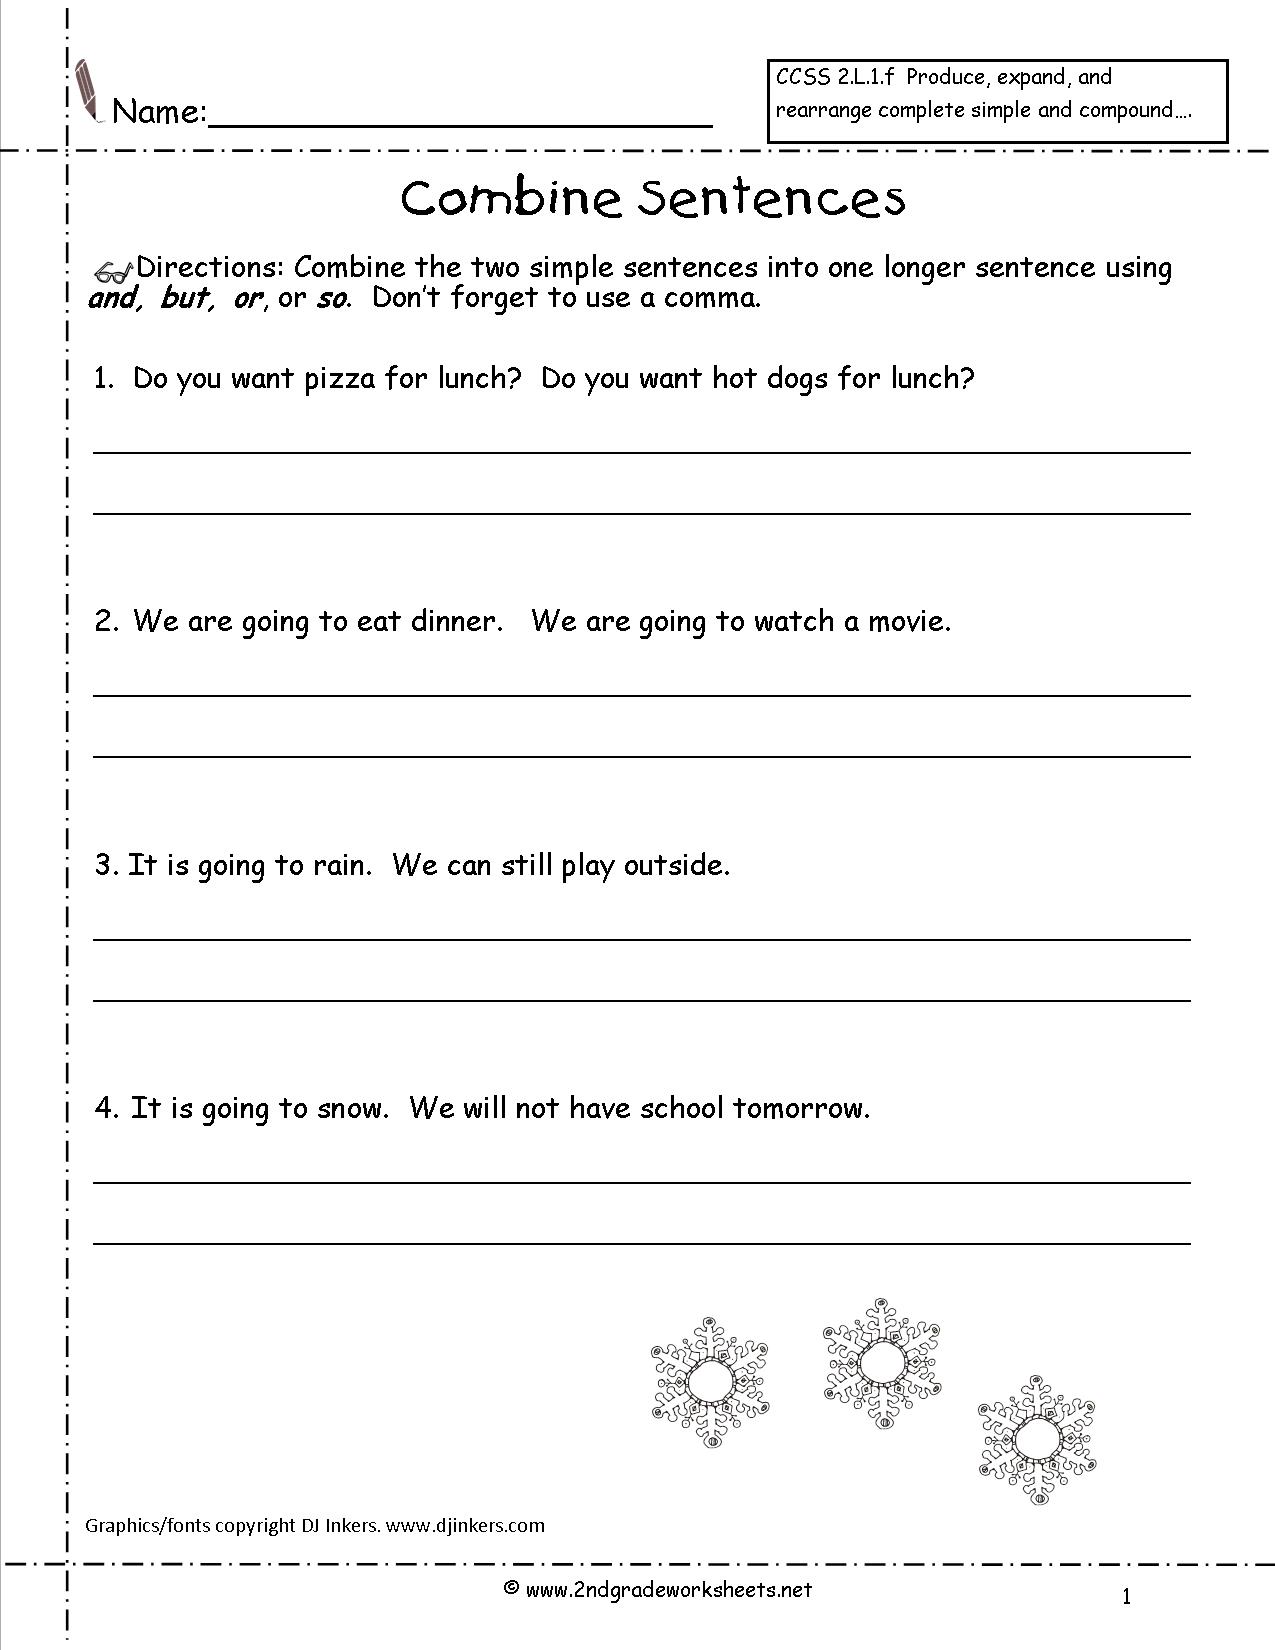 17-2nd-grade-sentence-correction-worksheets-worksheeto